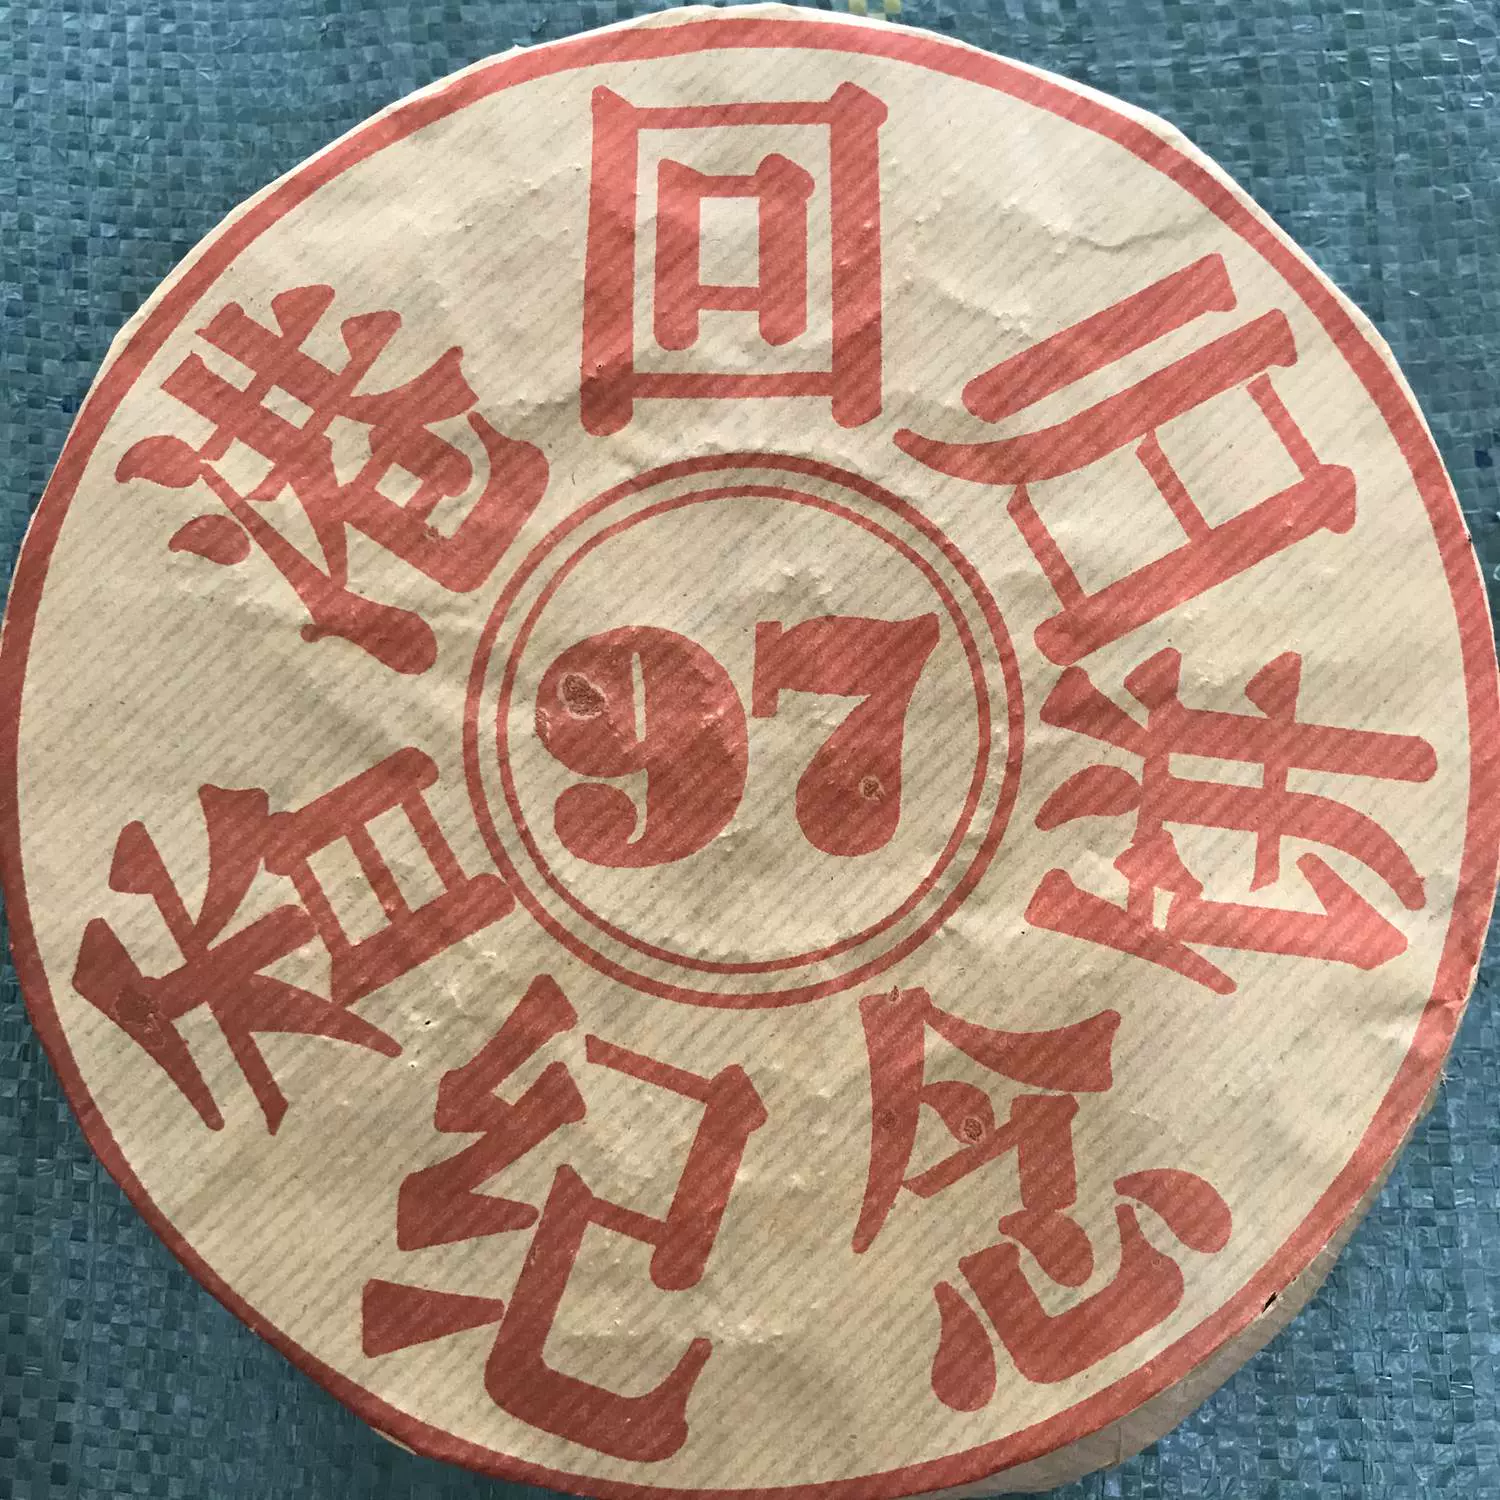 97年香港回歸紀念餅老熟茶500g雲南普洱老熟茶陳香濃鬱茶水甜滑-Taobao